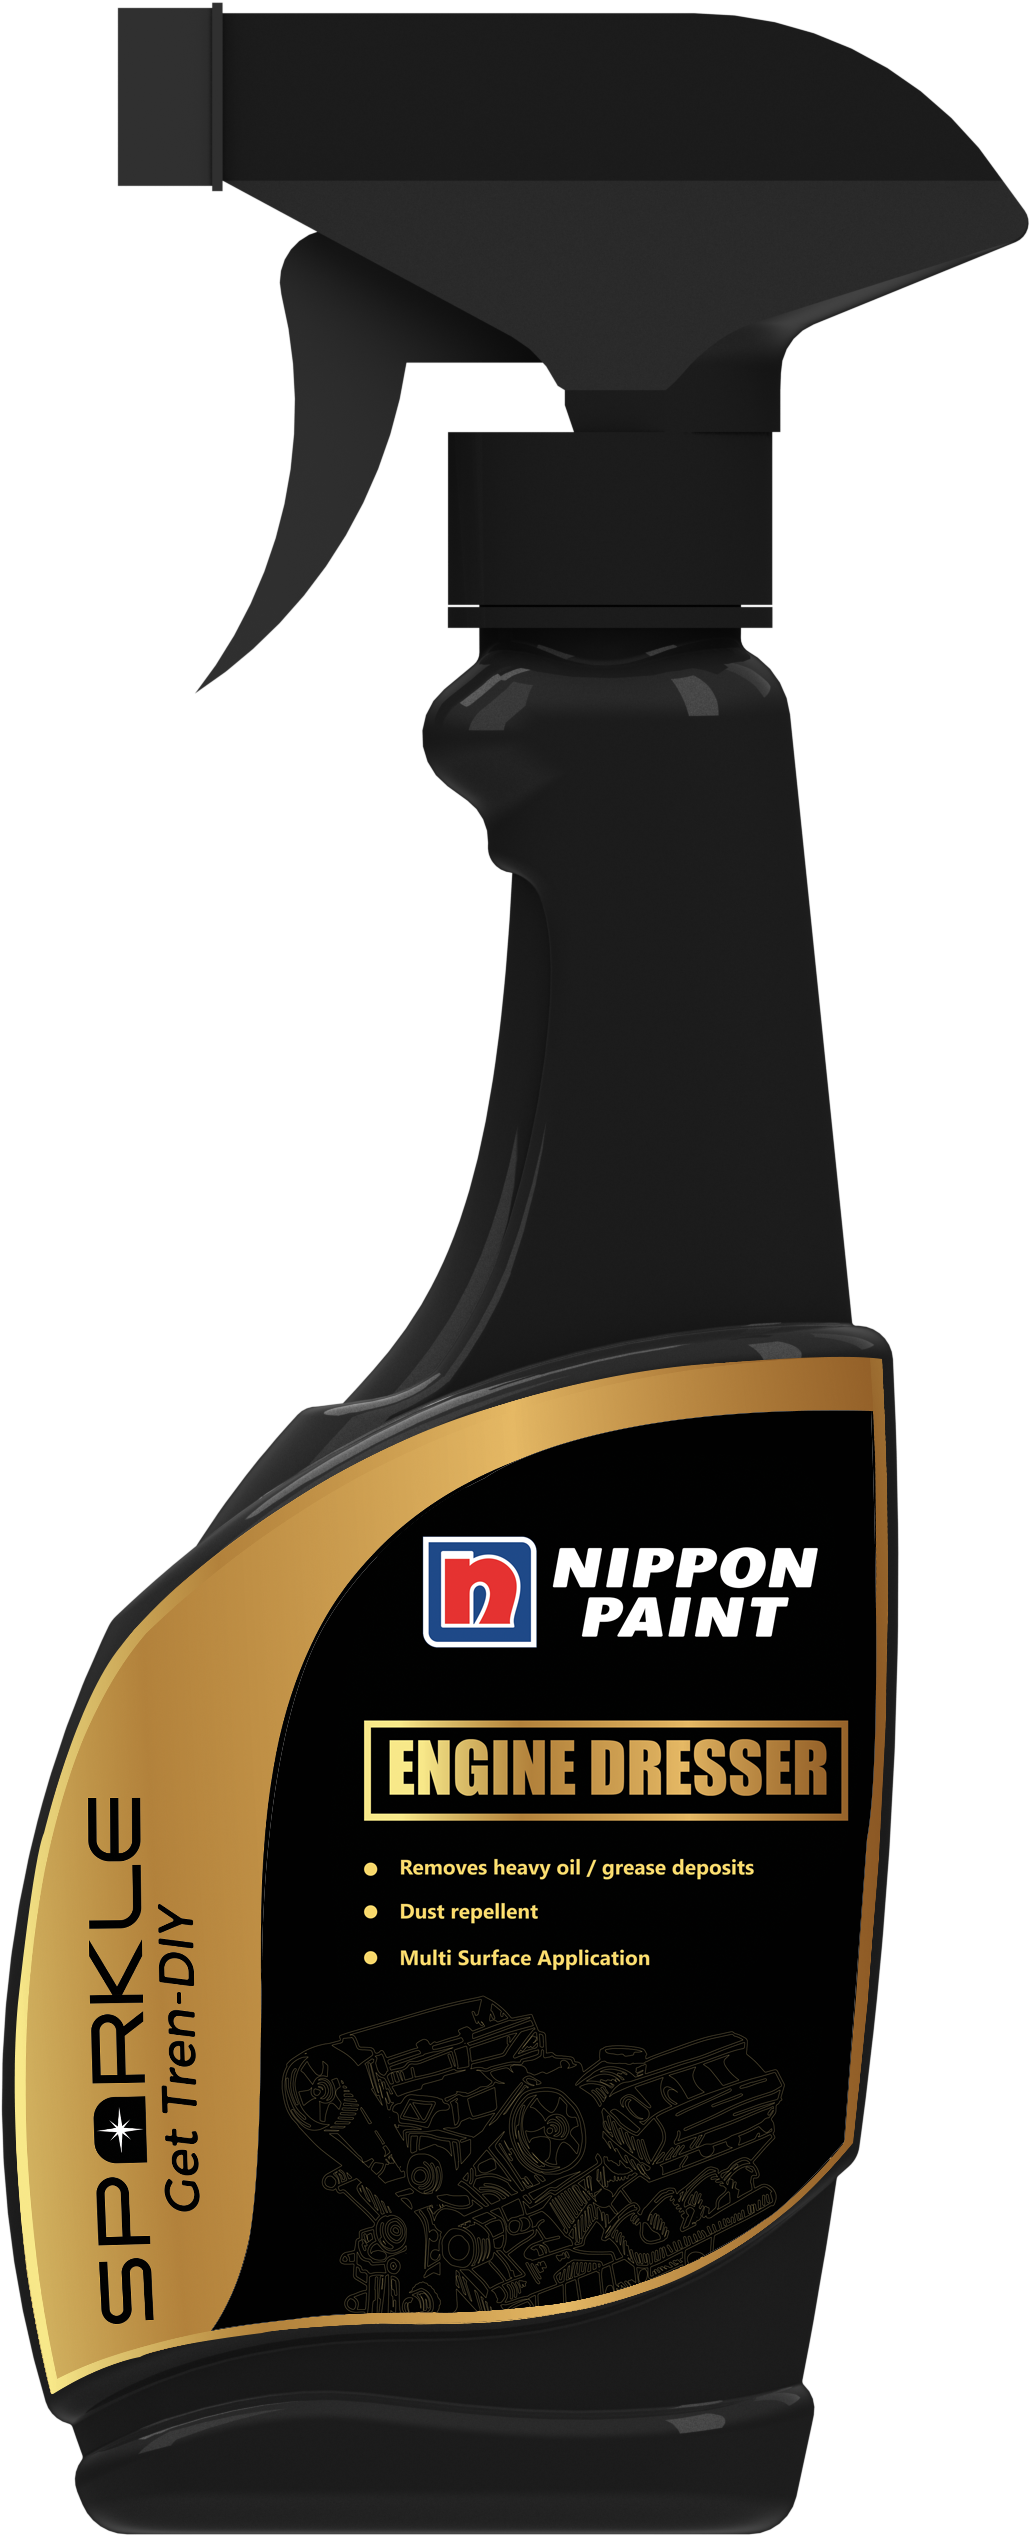 Nippon Paint Engine Dresser Spray Bottle PNG image